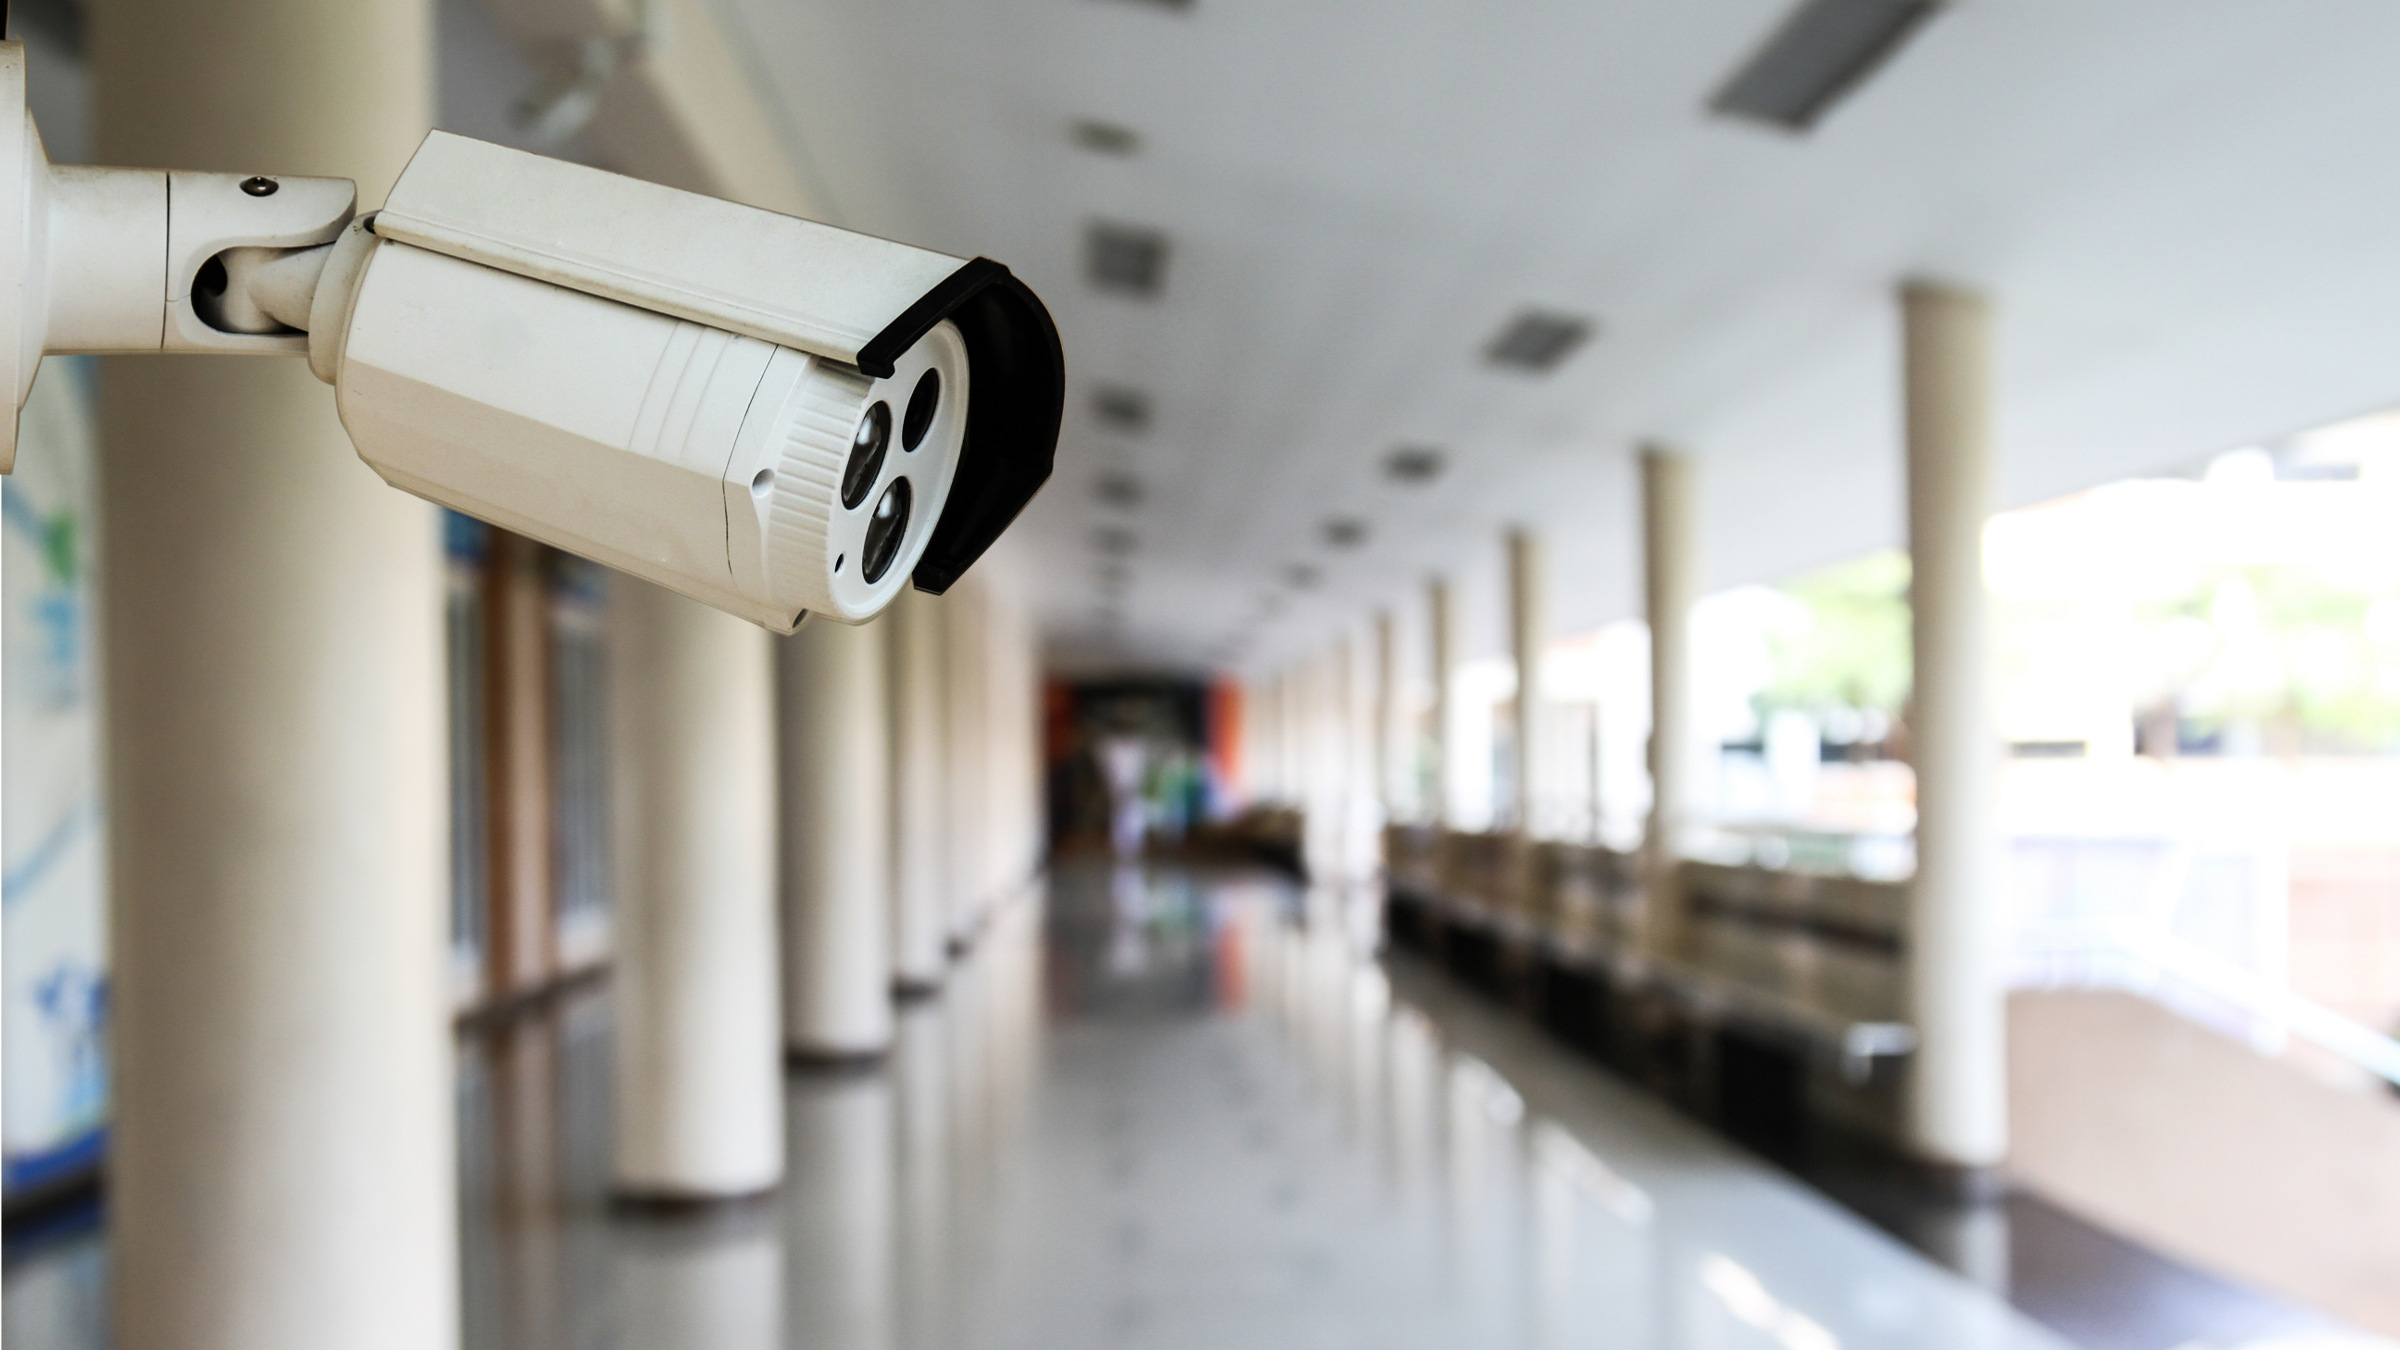 Credit: Shutterstock security camera in school hallway